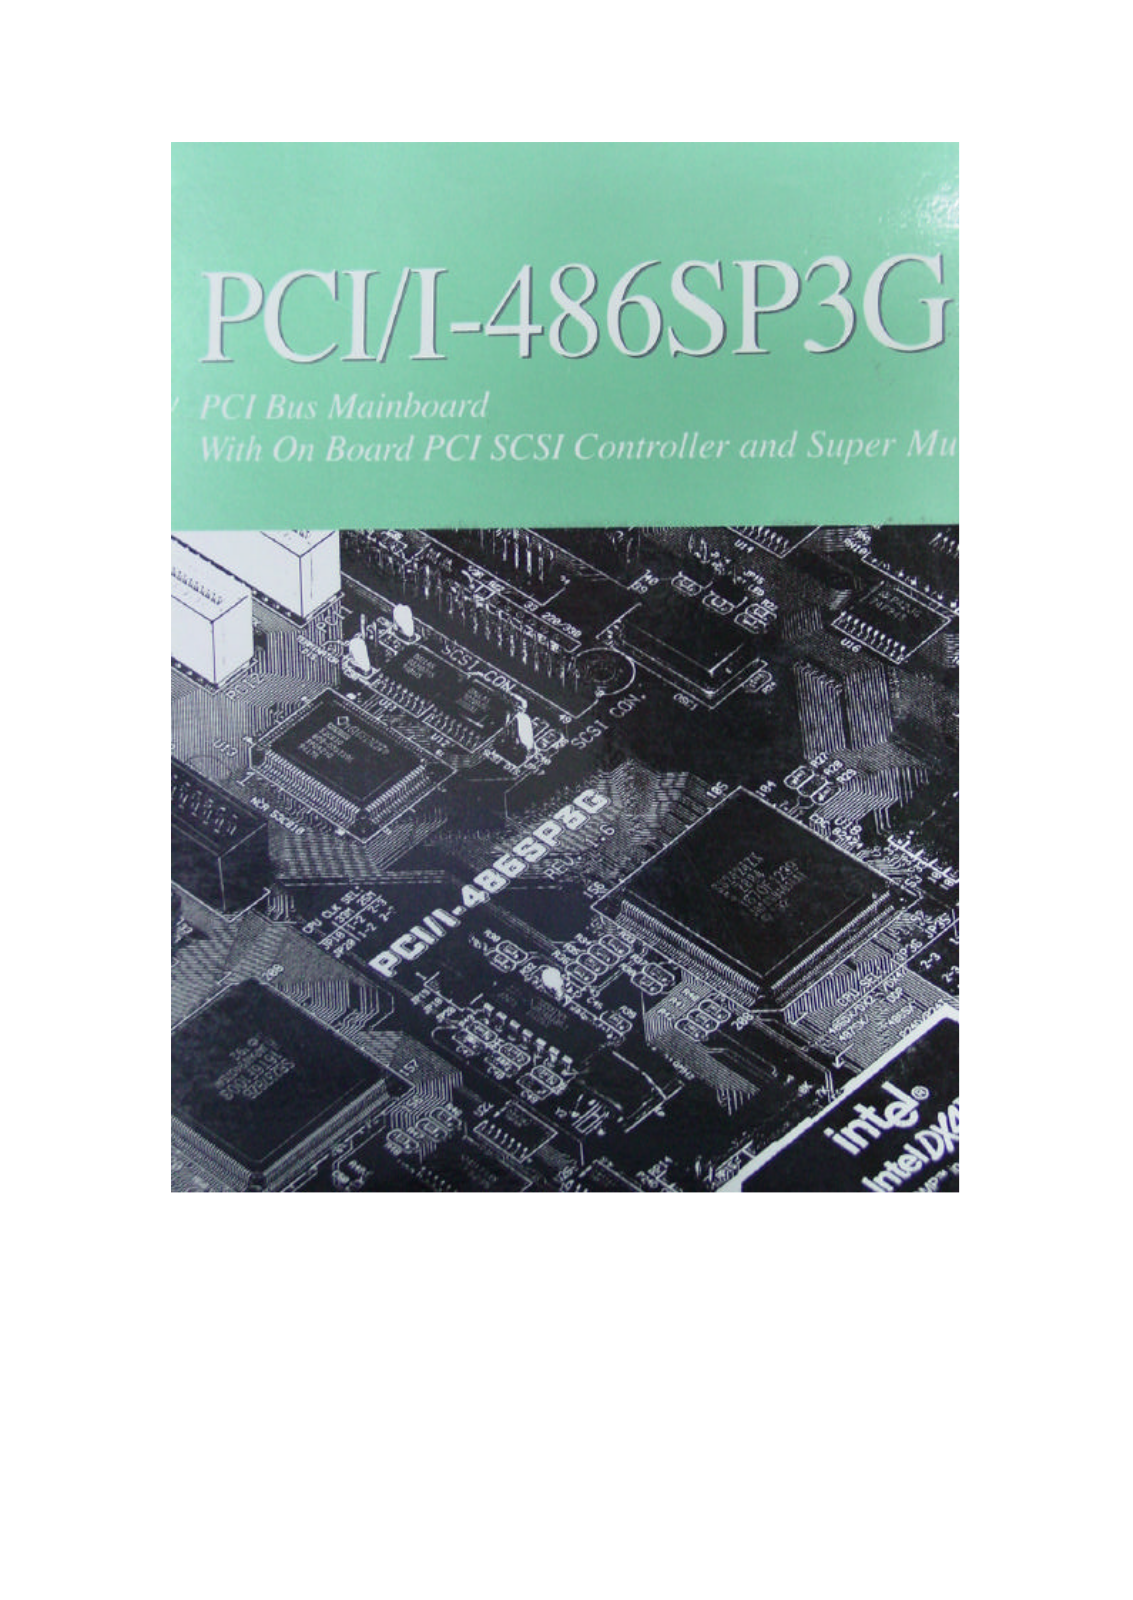 ASUS PCII-486SP3G User Manual